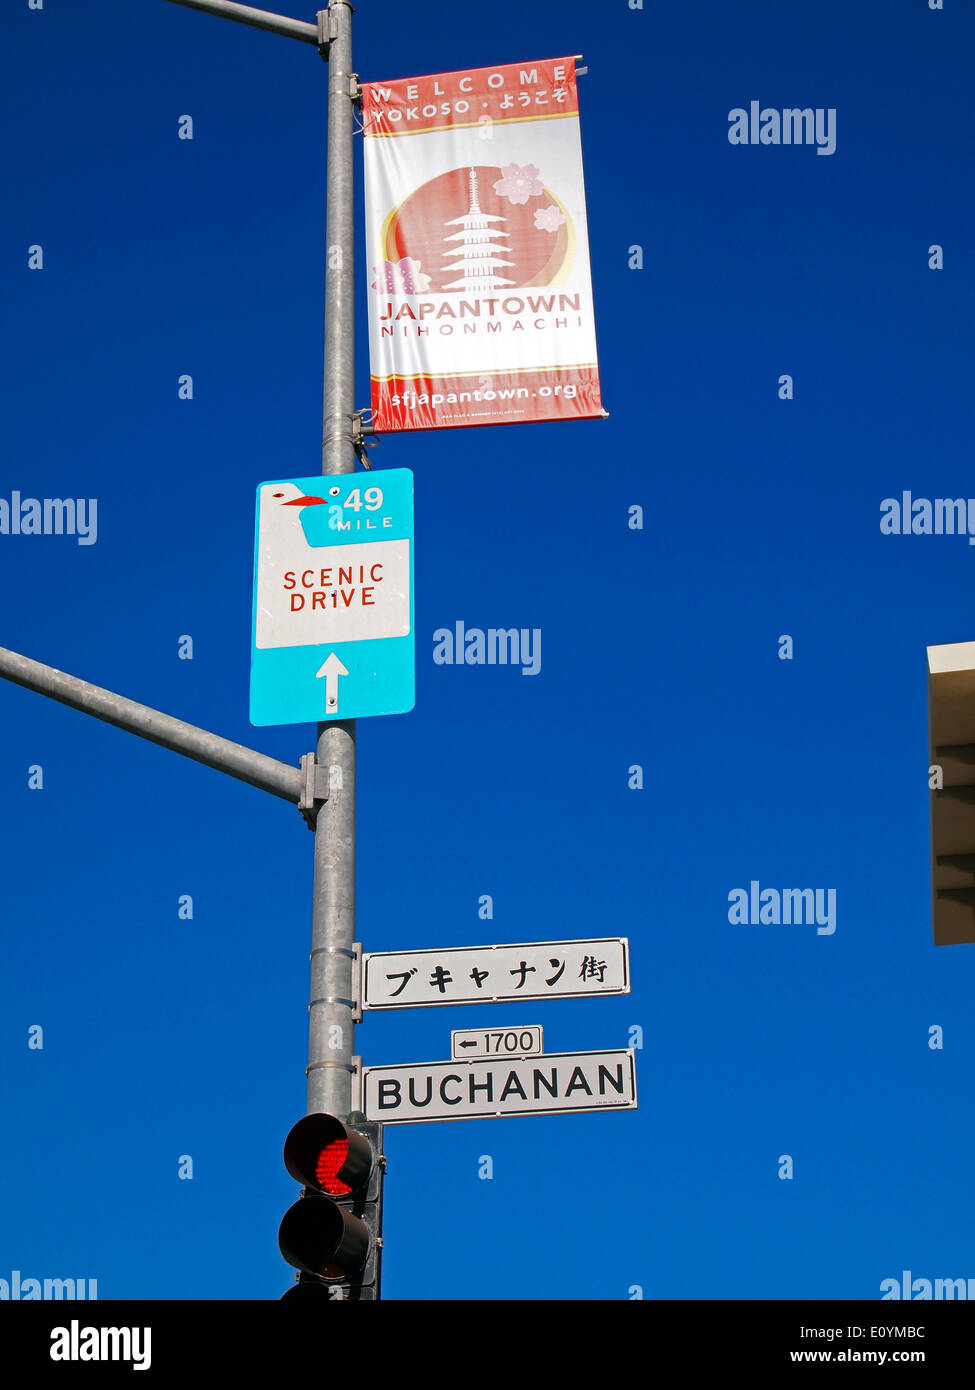 49 mile route panoramique, de Buchanan Street signs, Japantown de San Francisco, de bannière Banque D'Images